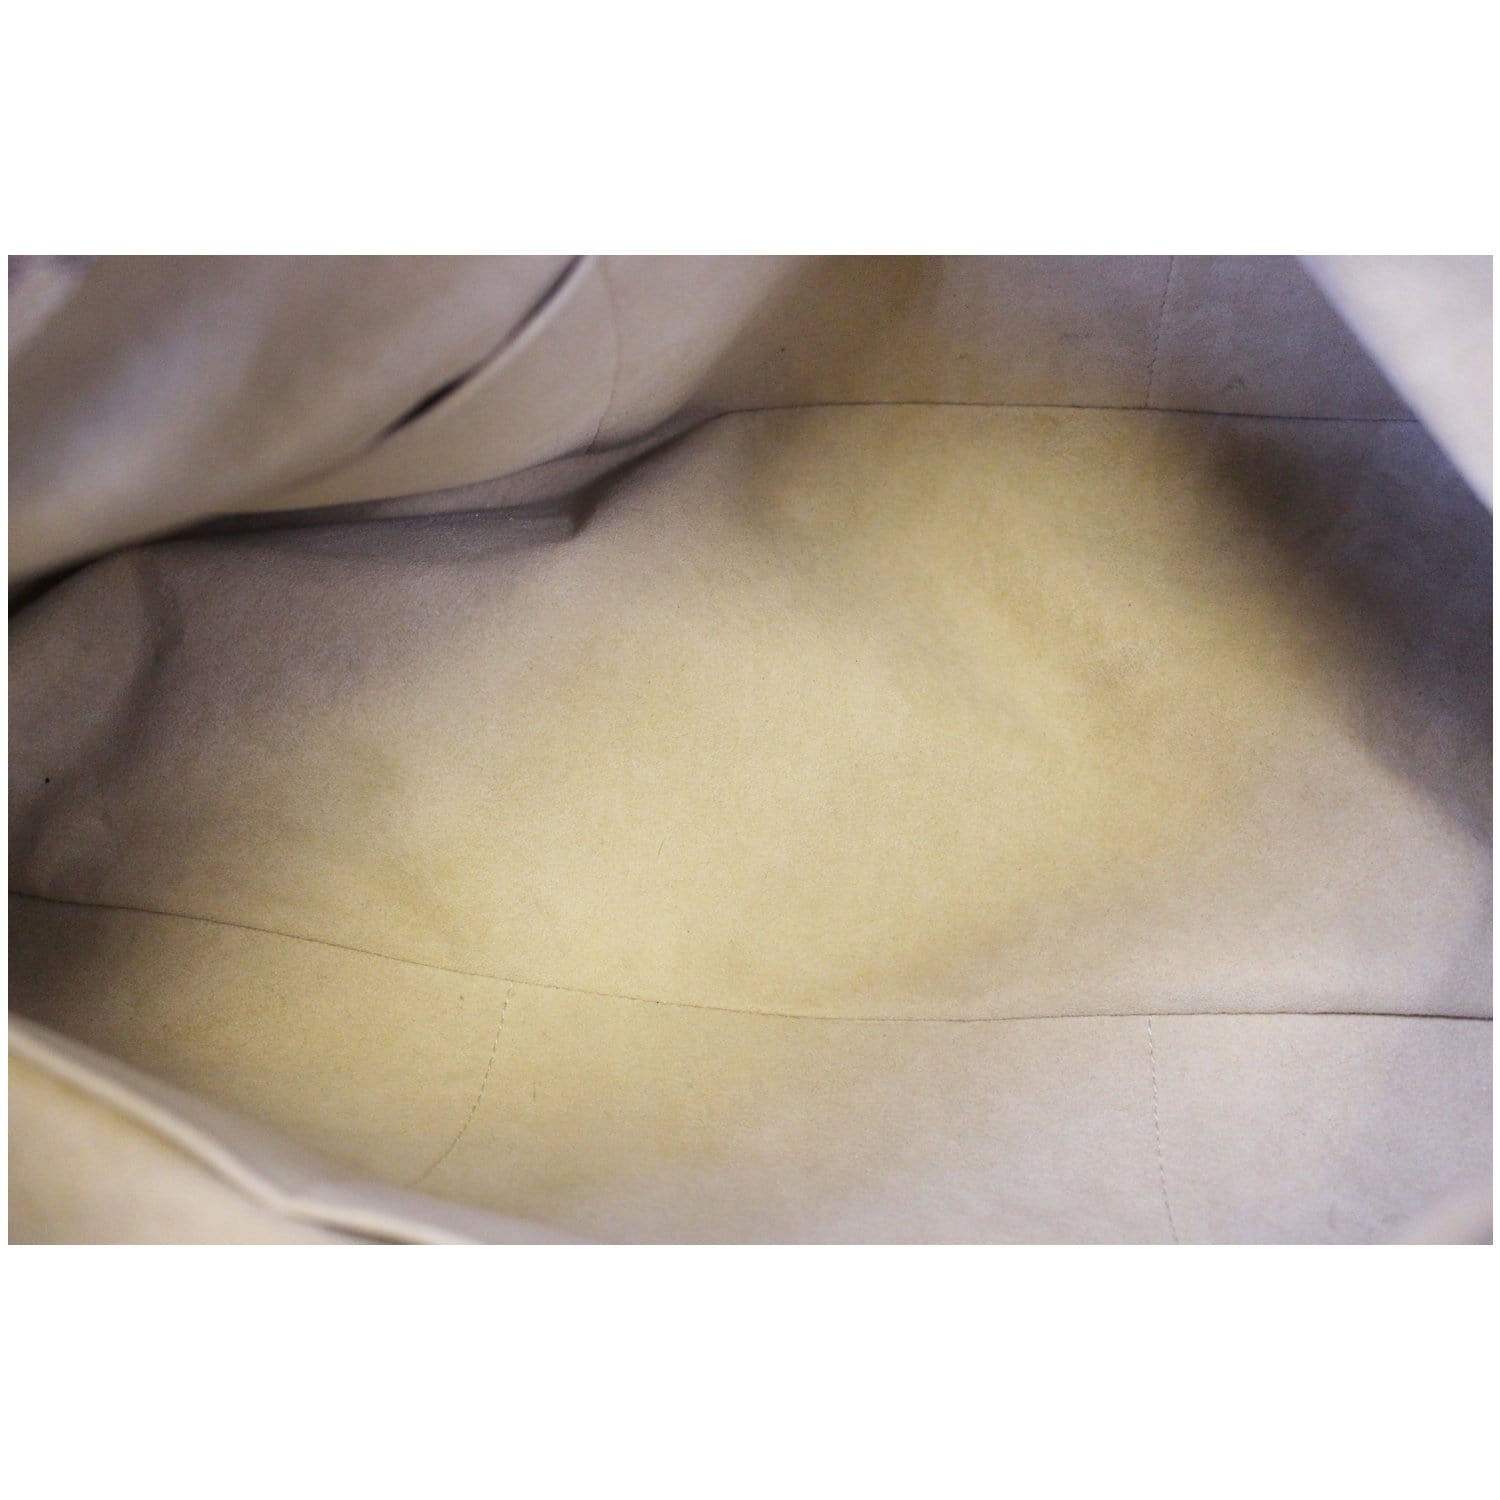 Mila - MM - Azur - Vuitton - N60027 – Белые женские кошельки Louis